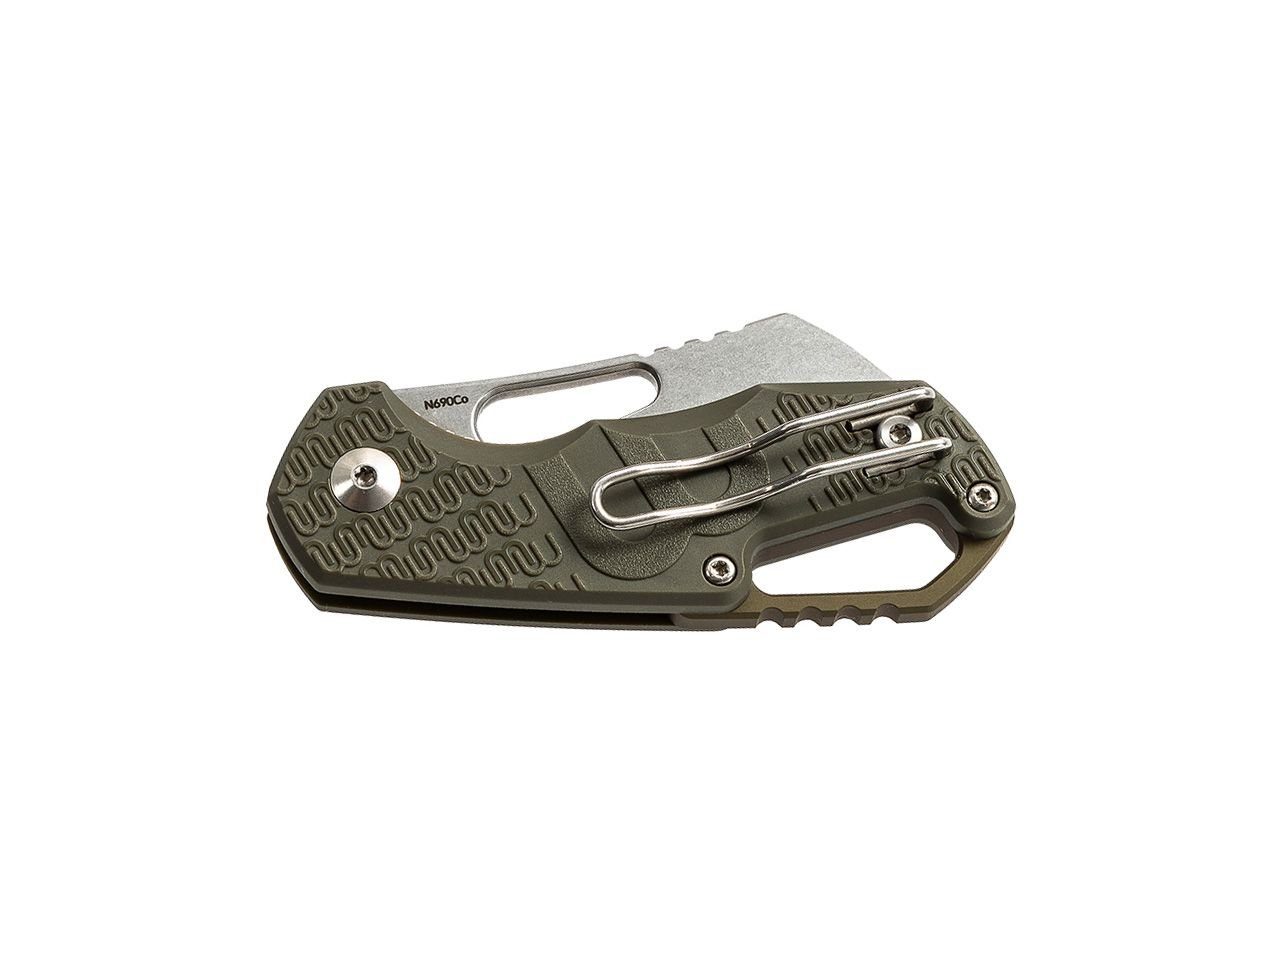 MKM Isonzo Einhandmesser Liner Cleaver Green Taschenmesser Lock